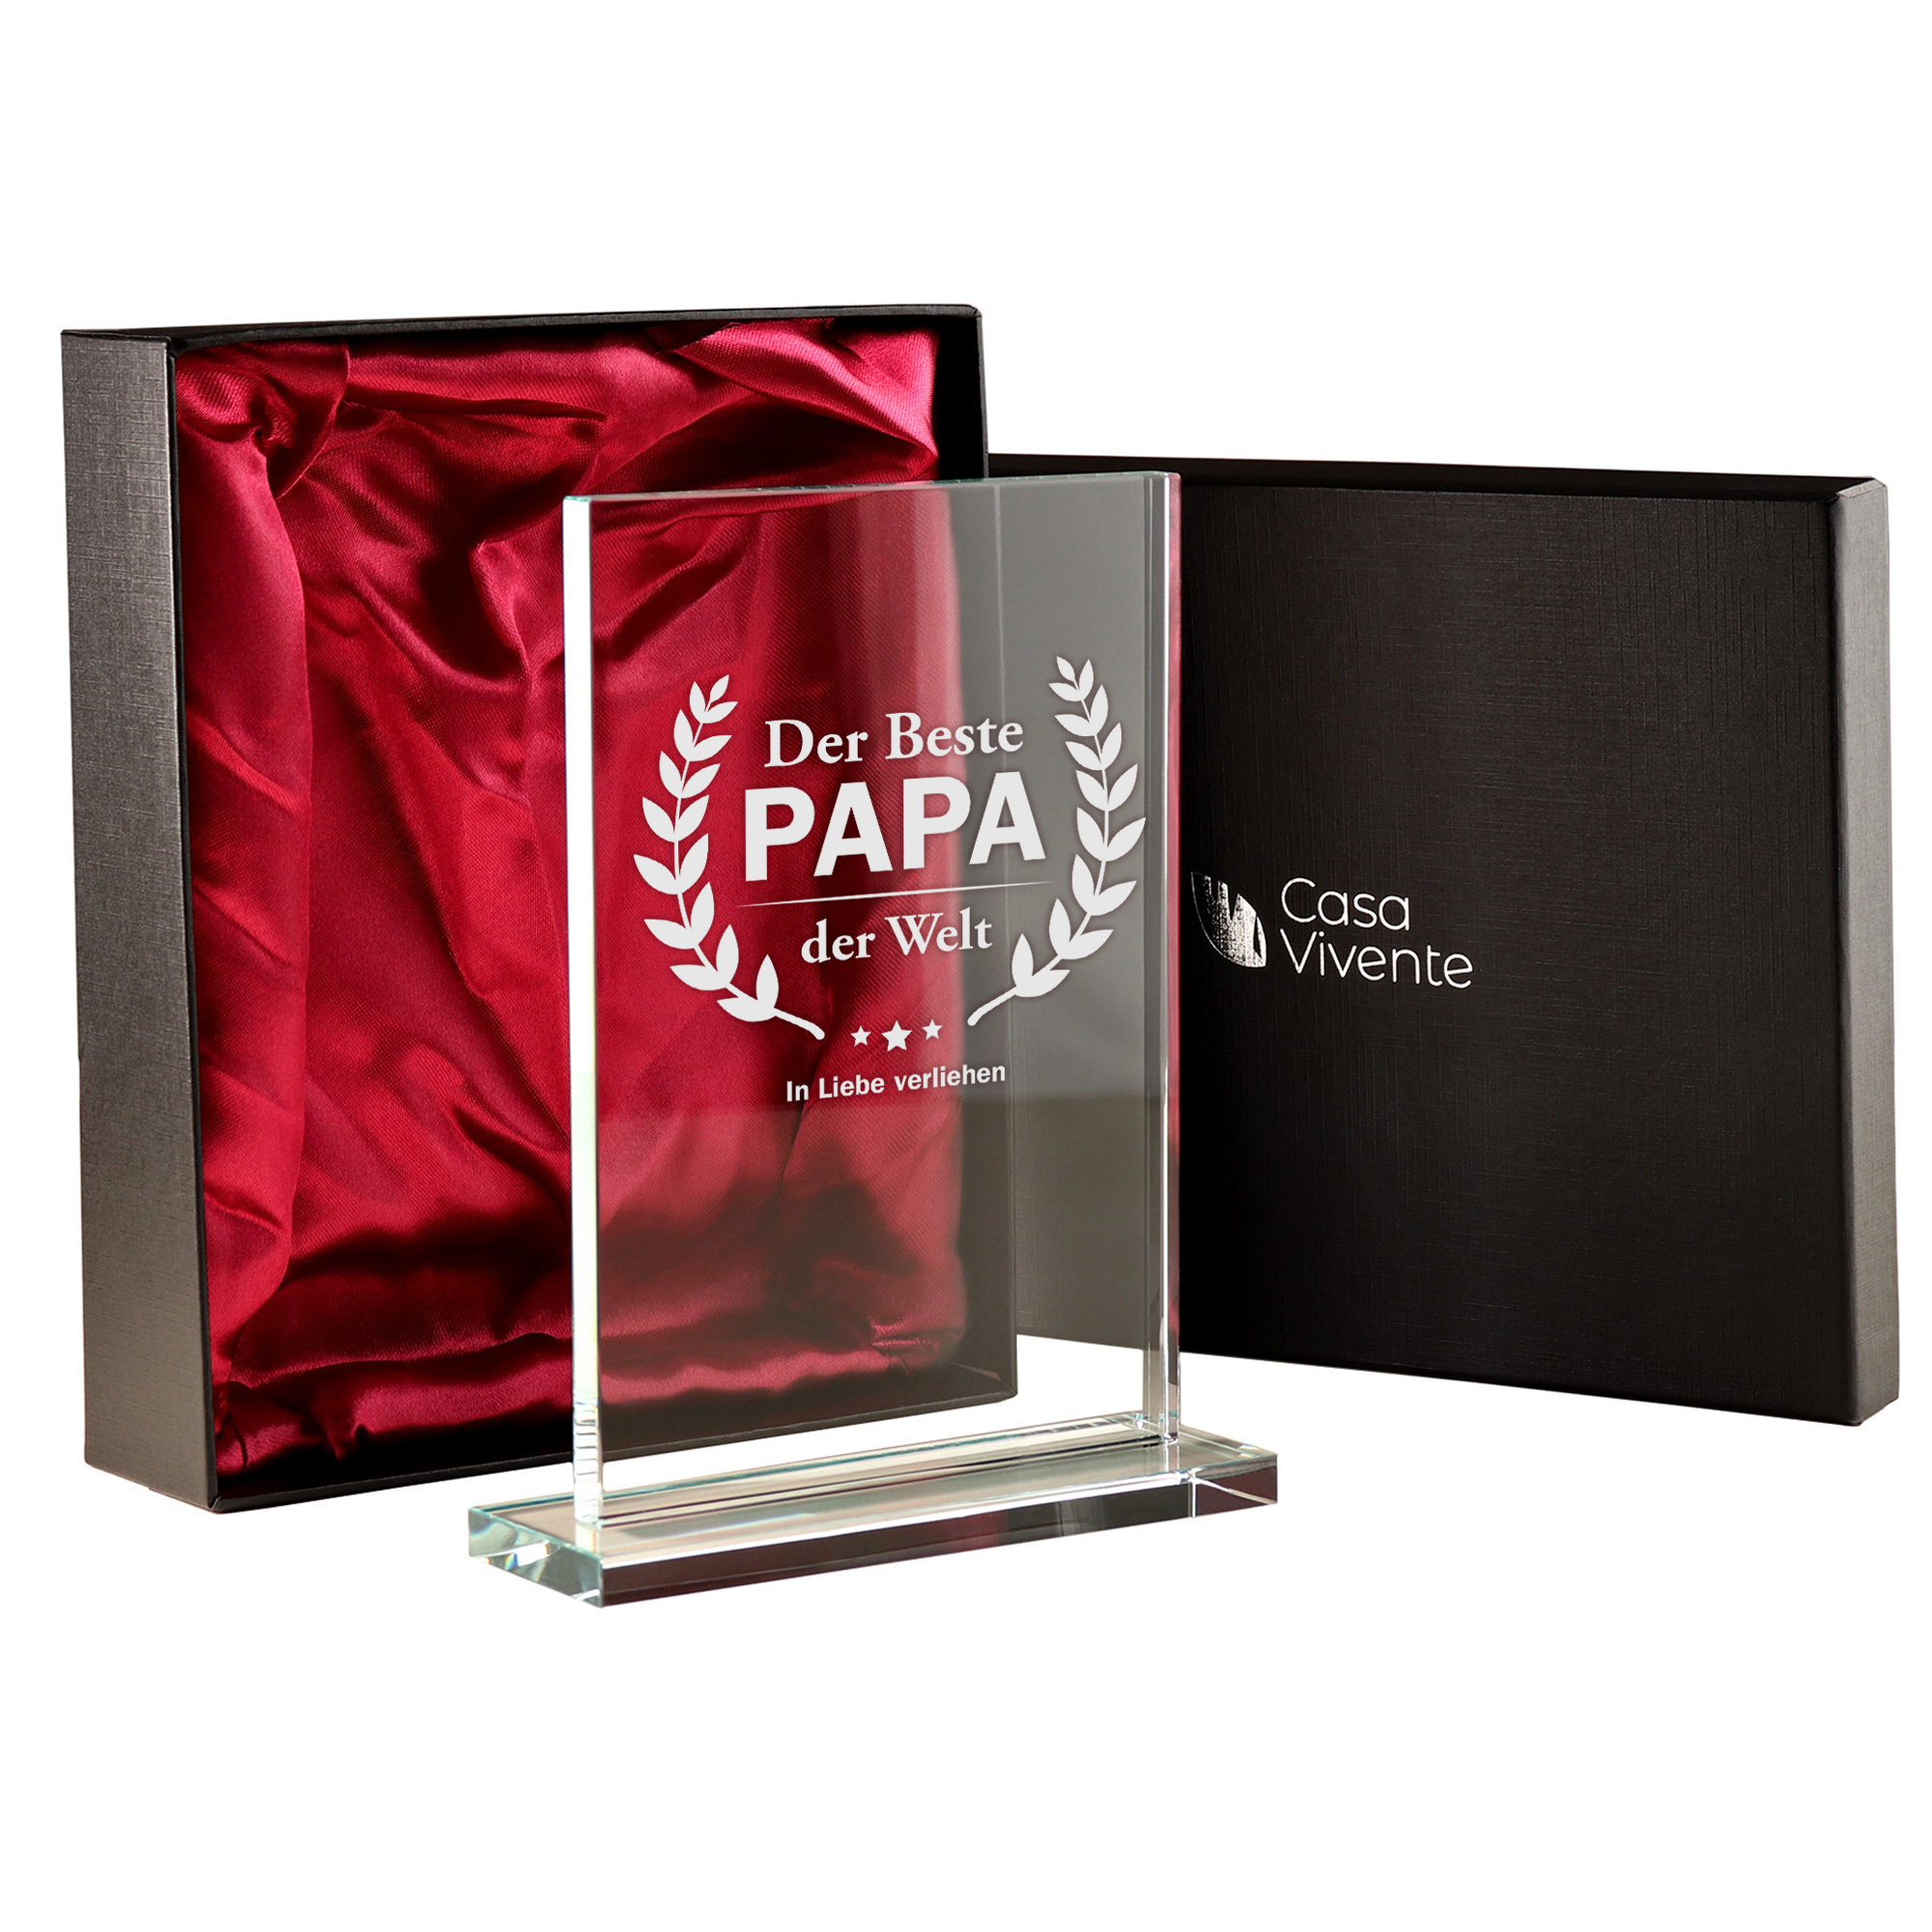 Glaspokal - Auszeichnung für besten Papa 0021-0001-DE-0004 - 4